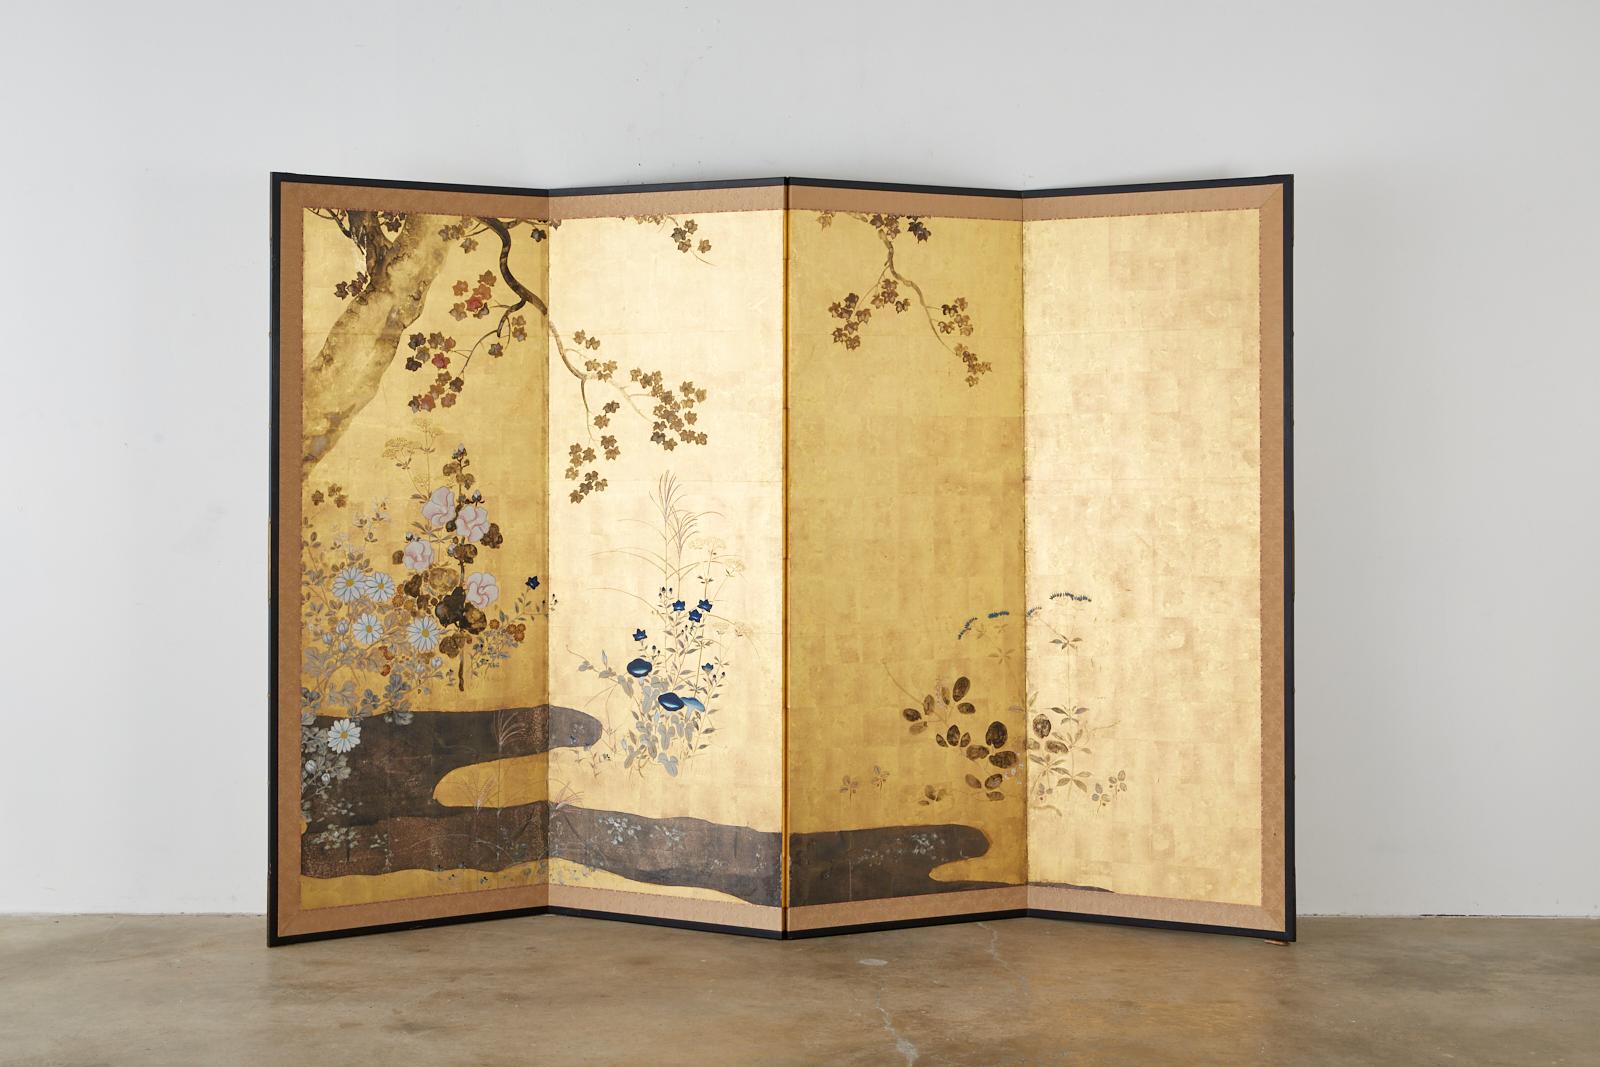 Prächtiger japanischer vierteiliger Meiji-Leinwand aus dem 19. Jahrhundert. Es wurde im Stil der Rimpa-Schule angefertigt und zeigt eine heitere florale Herbstlandschaft. Wunderschön gemalte Sumi-Tinte und Farbpigmente über Gold- und